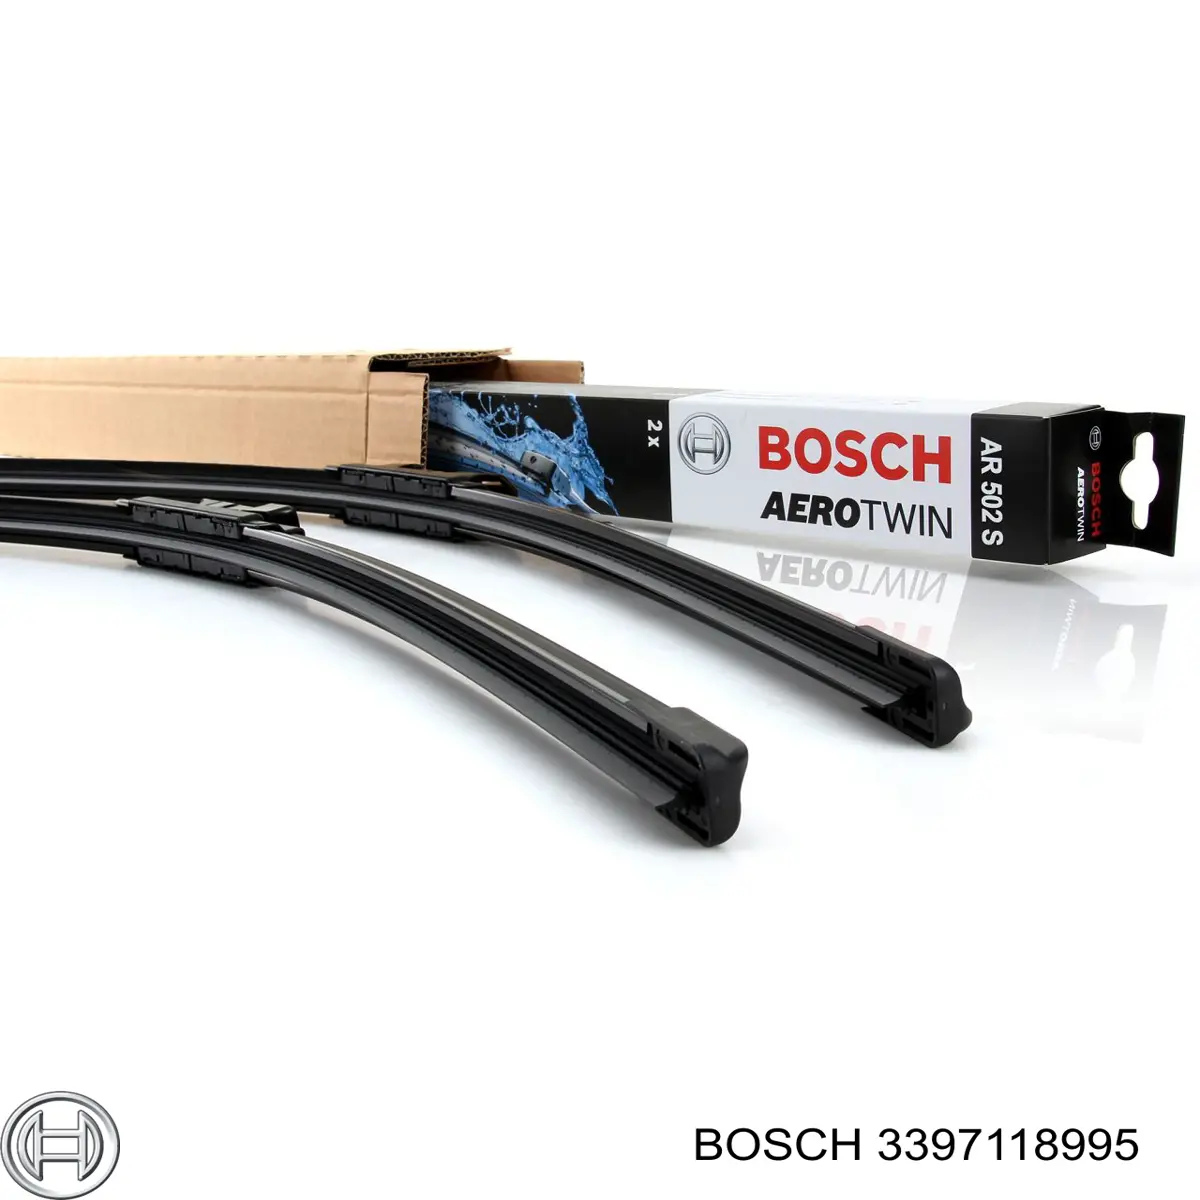 3397118995 Bosch limpiaparabrisas